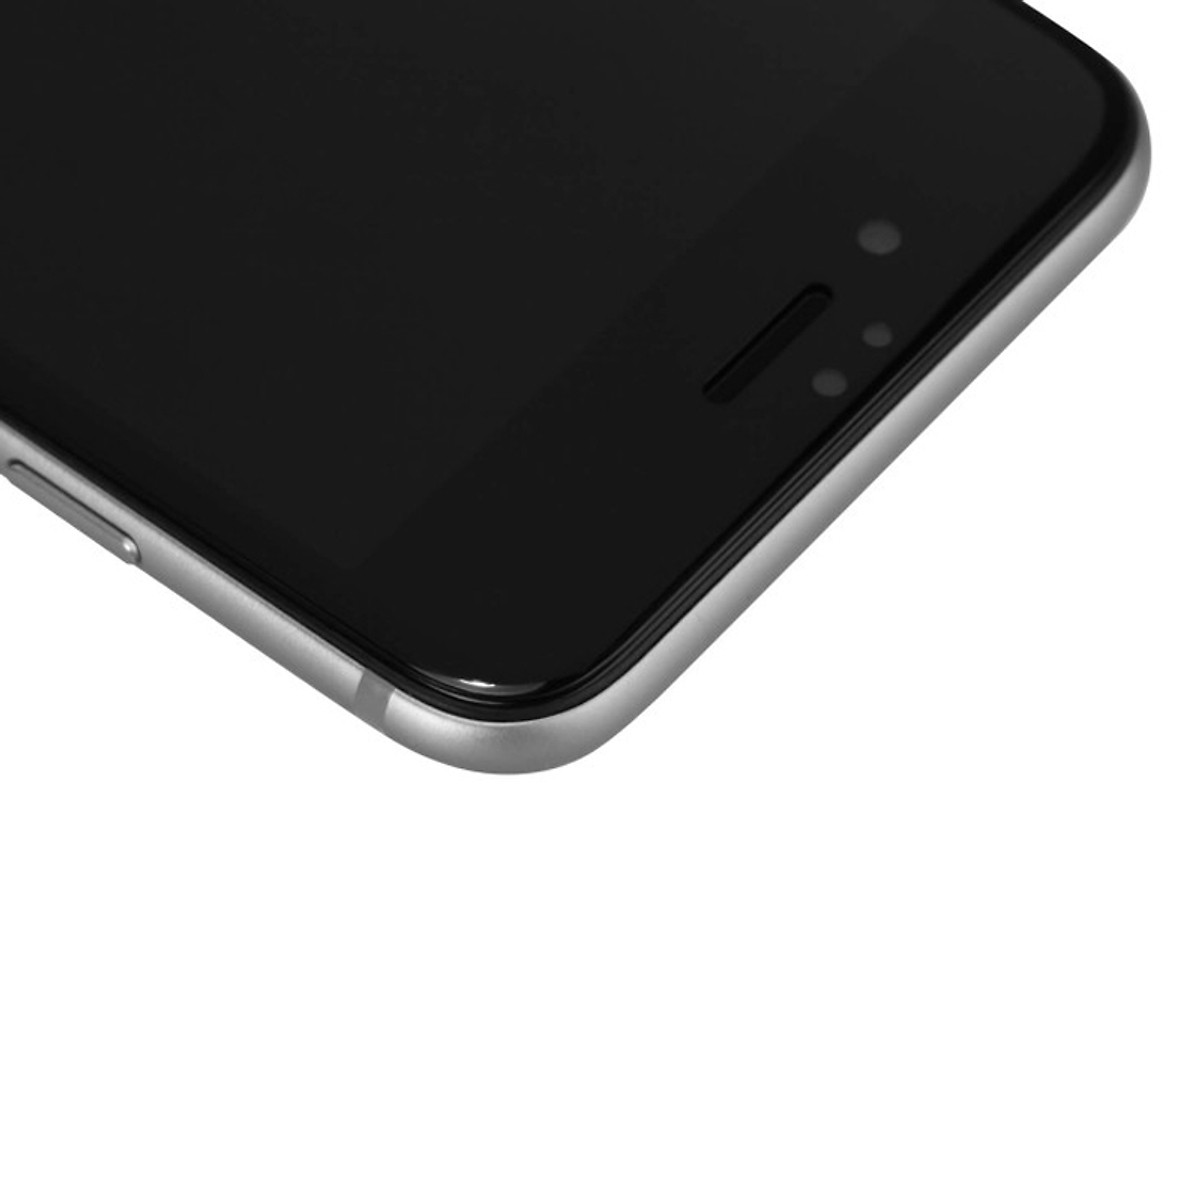 Trắng - Miếng dán kính cường lực 3D full màn hình cho iPhone SE 2020 hiệu Nillkin CP+ Max (Mỏng 0.3mm, Kính ACC Japan, Chống Lóa, Hạn Chế Vân Tay) - Hàng chính hãng